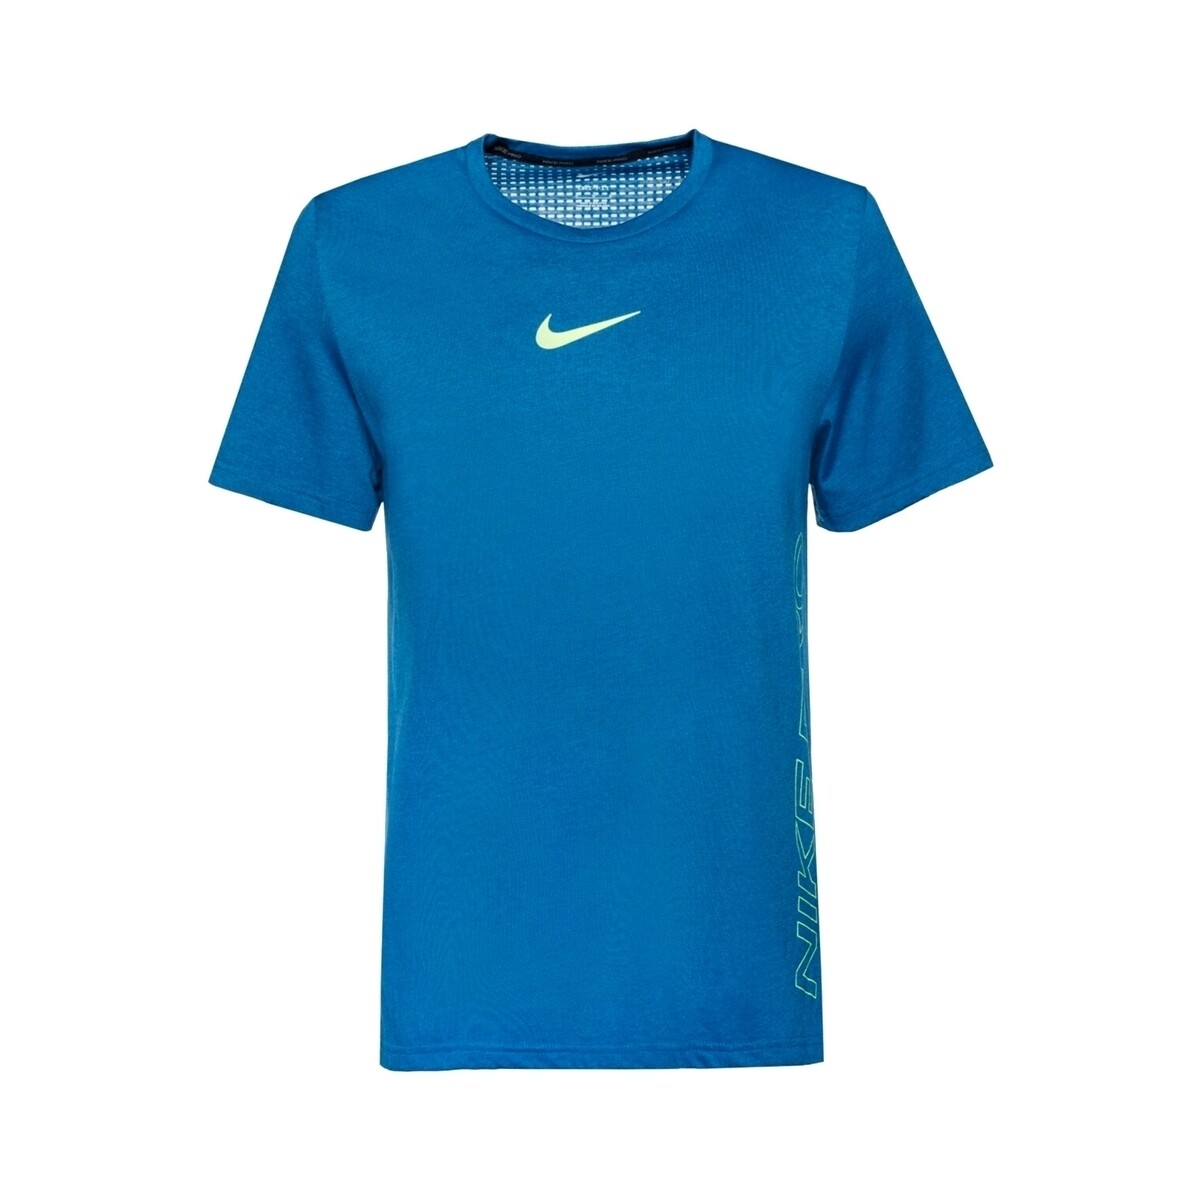 Vêtements Homme T-shirts manches courtes Nike DD1828 Bleu